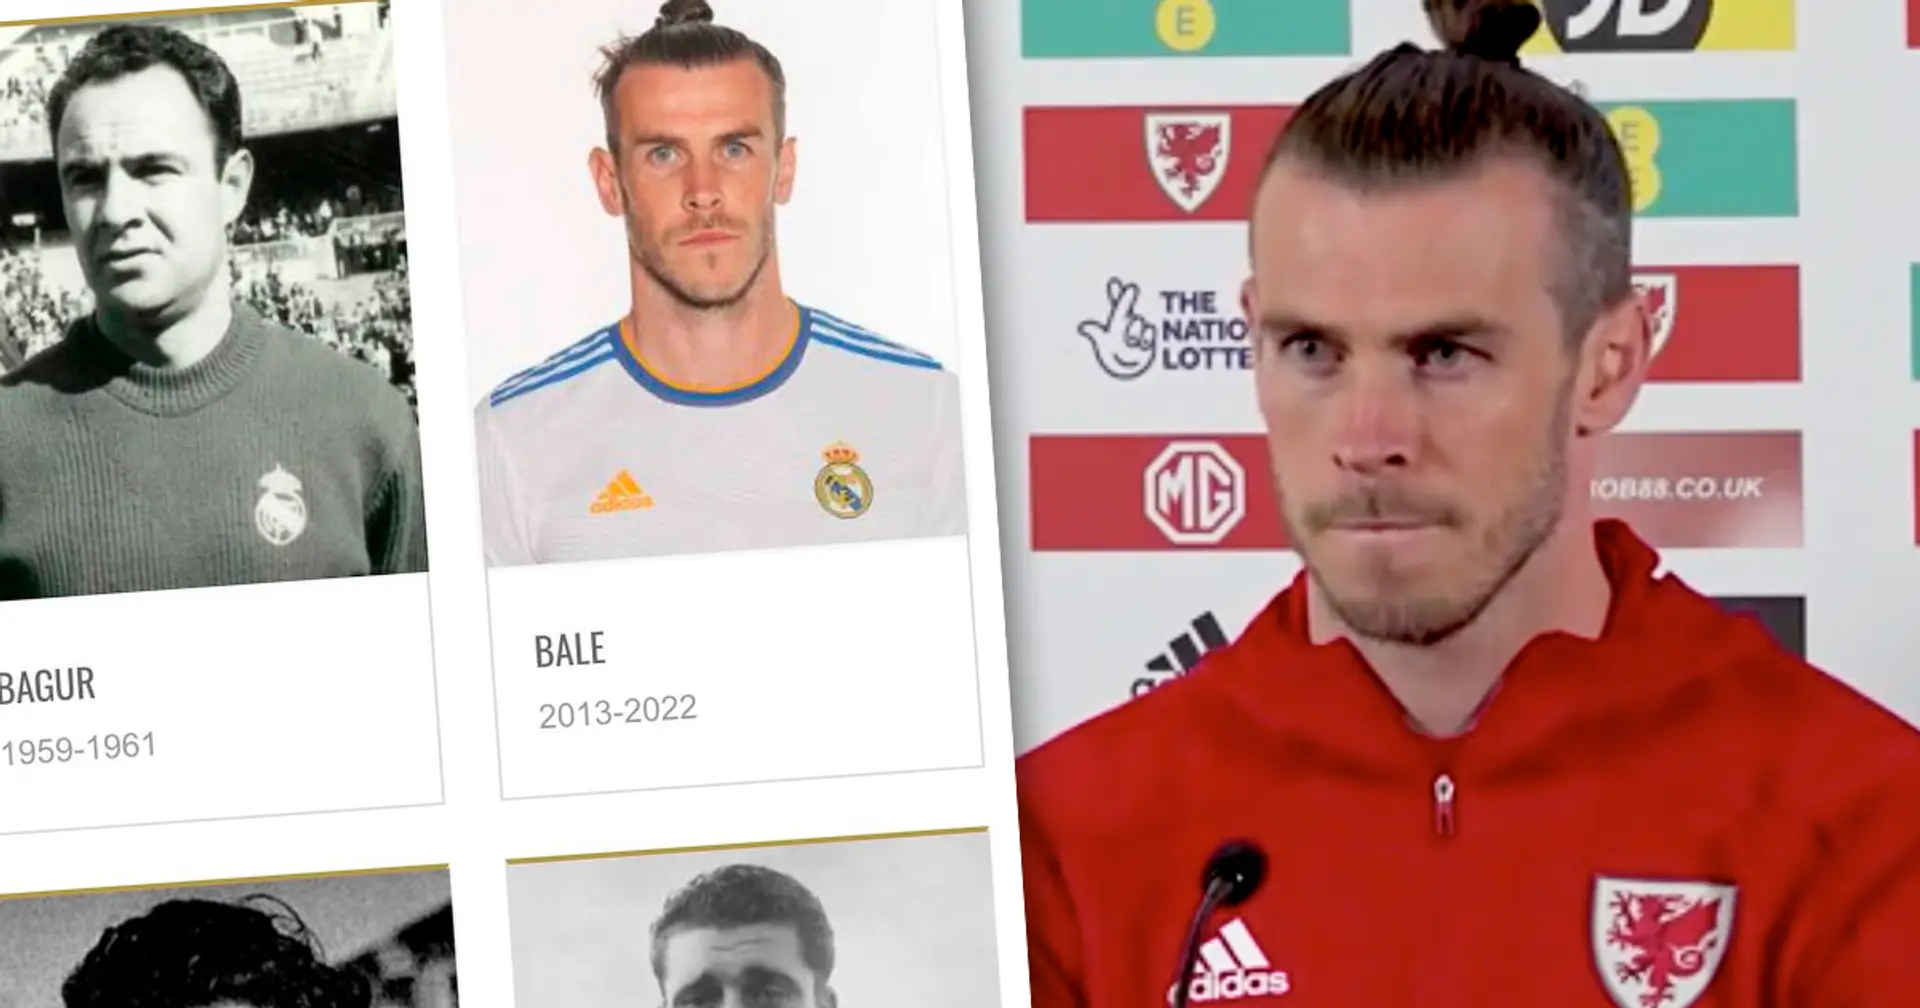 Le Real Madrid ajoute 3 joueurs à la liste des légendes, dont Bale